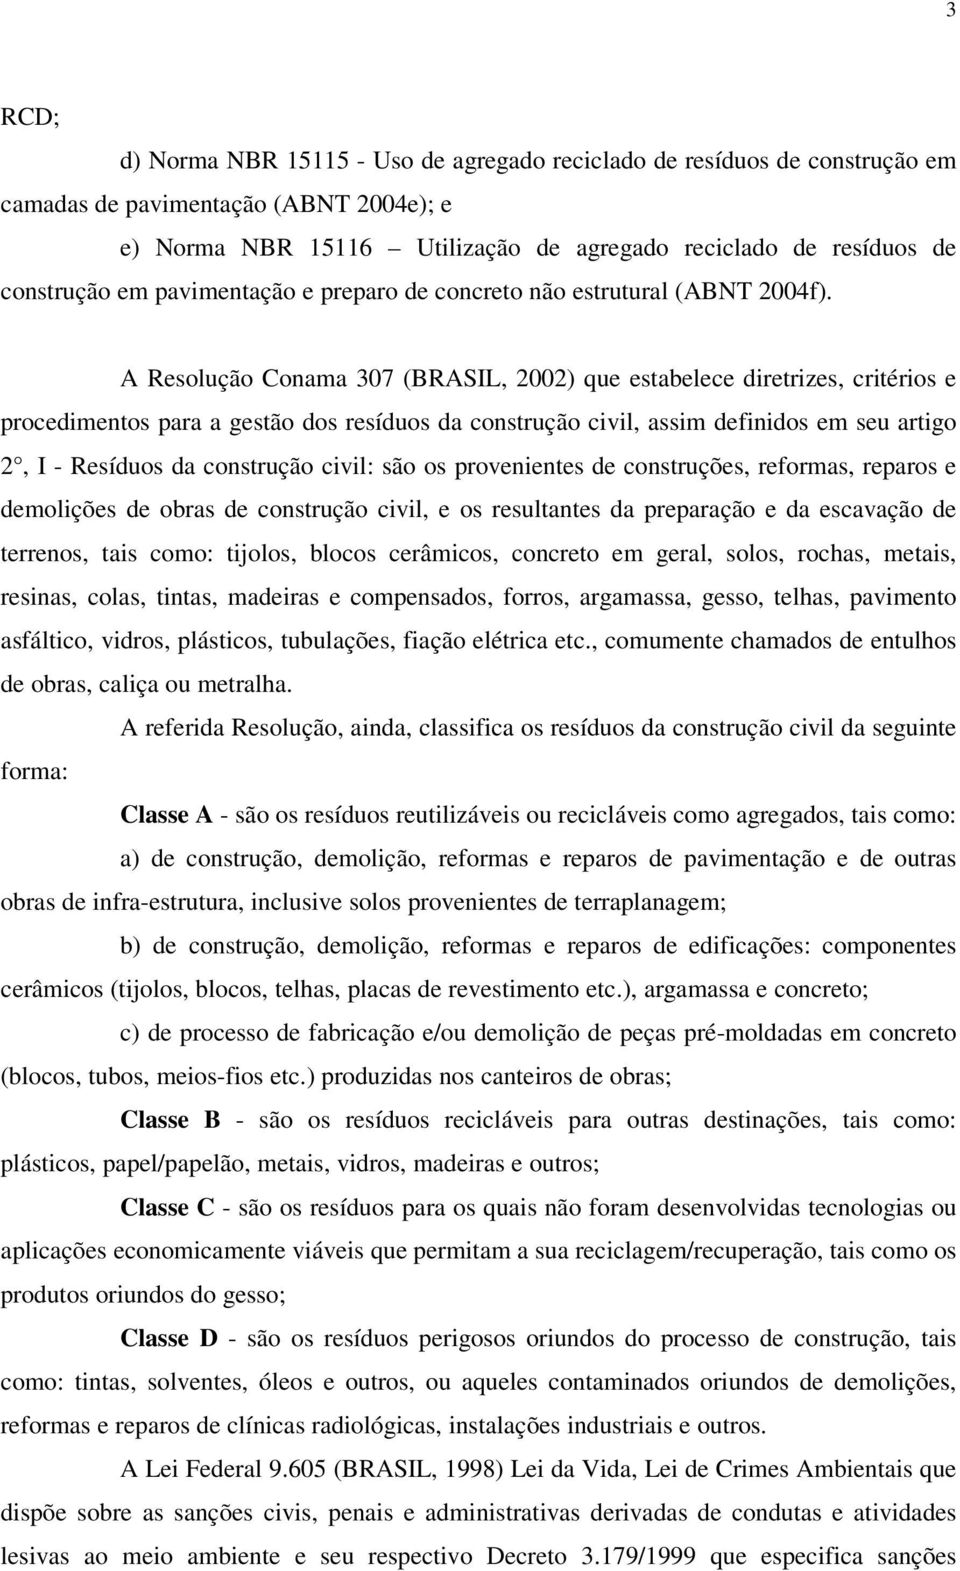 A Resolução Conama 307 (BRASIL, 2002) que estabelece diretrizes, critérios e procedimentos para a gestão dos resíduos da construção civil, assim definidos em seu artigo 2, I - Resíduos da construção